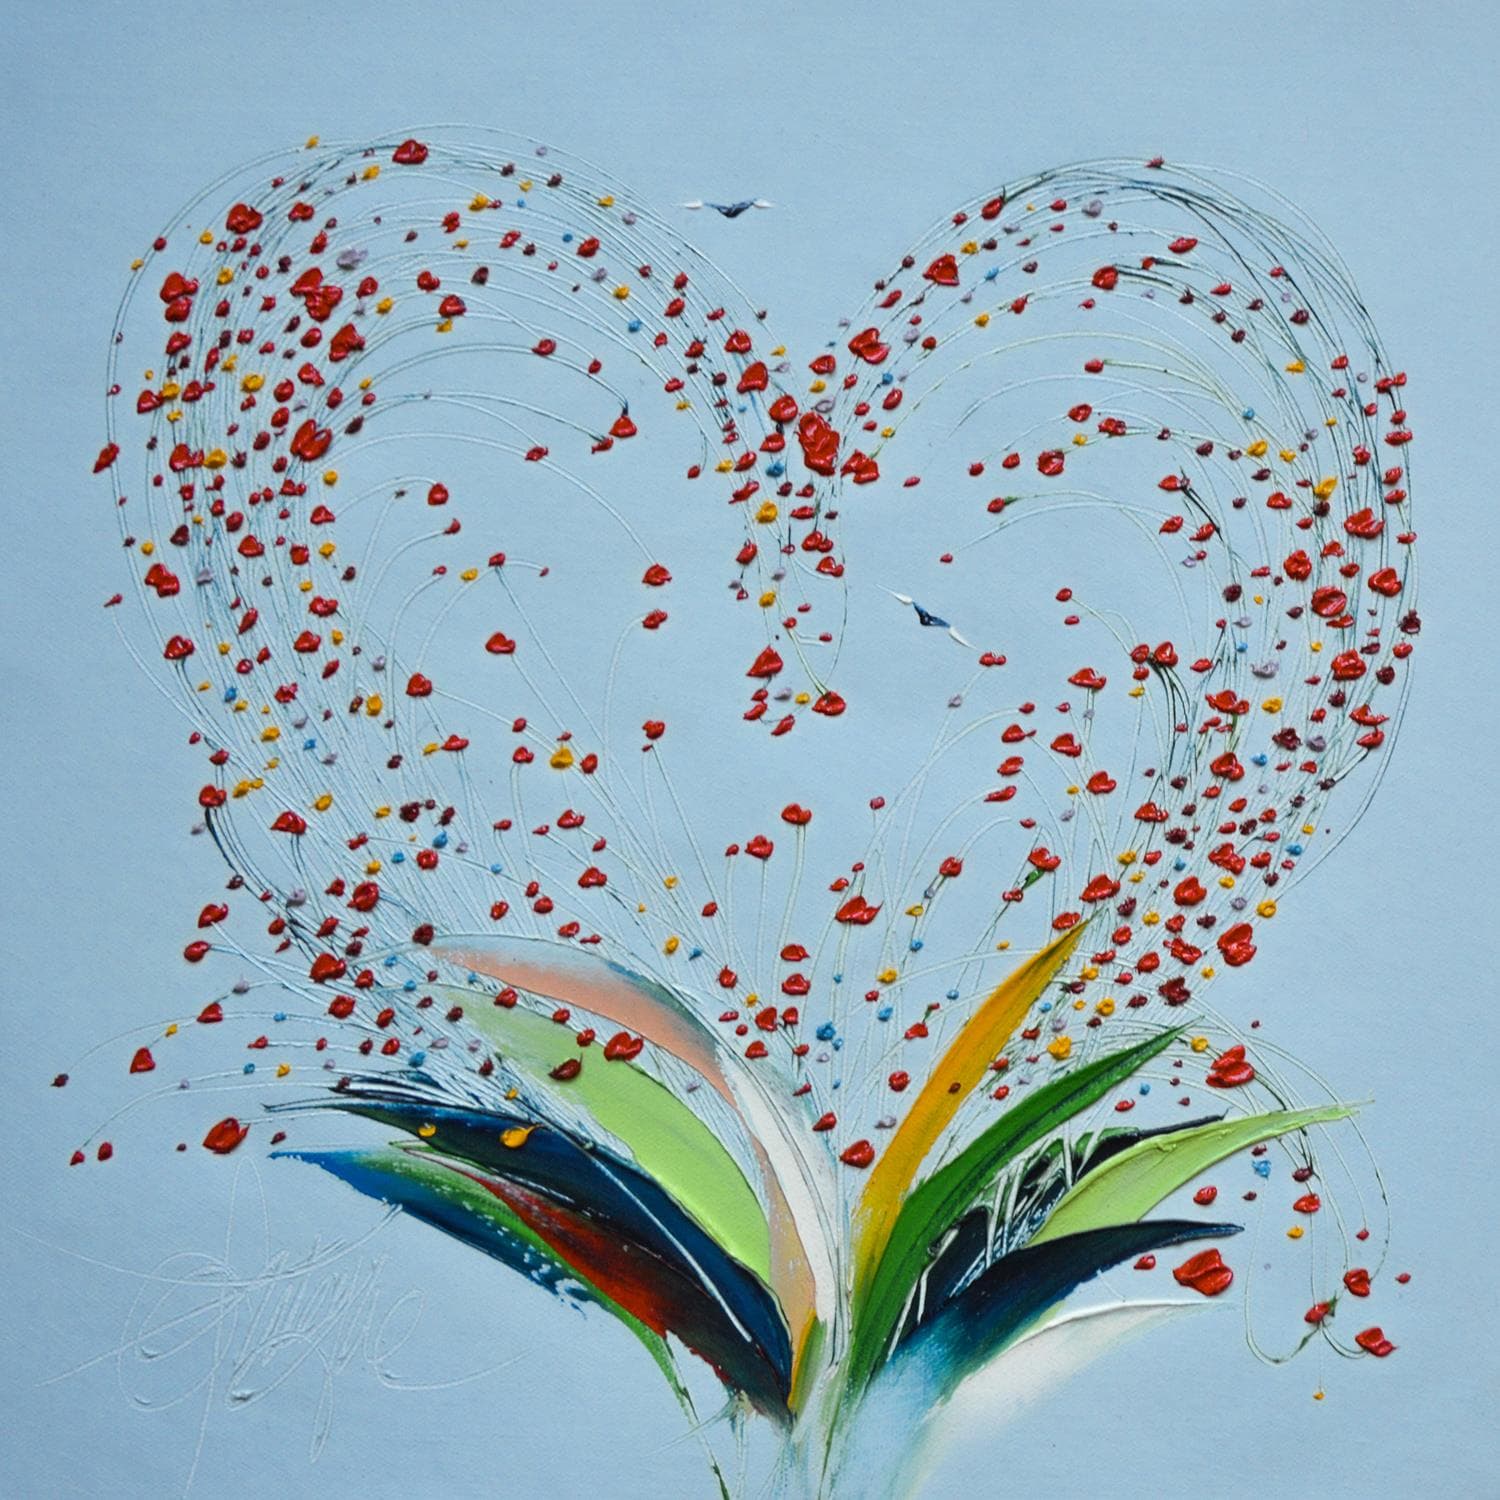 Small Paintings Sur Le Coeur Mon Amour By David Fonteyne Carre D Artistes